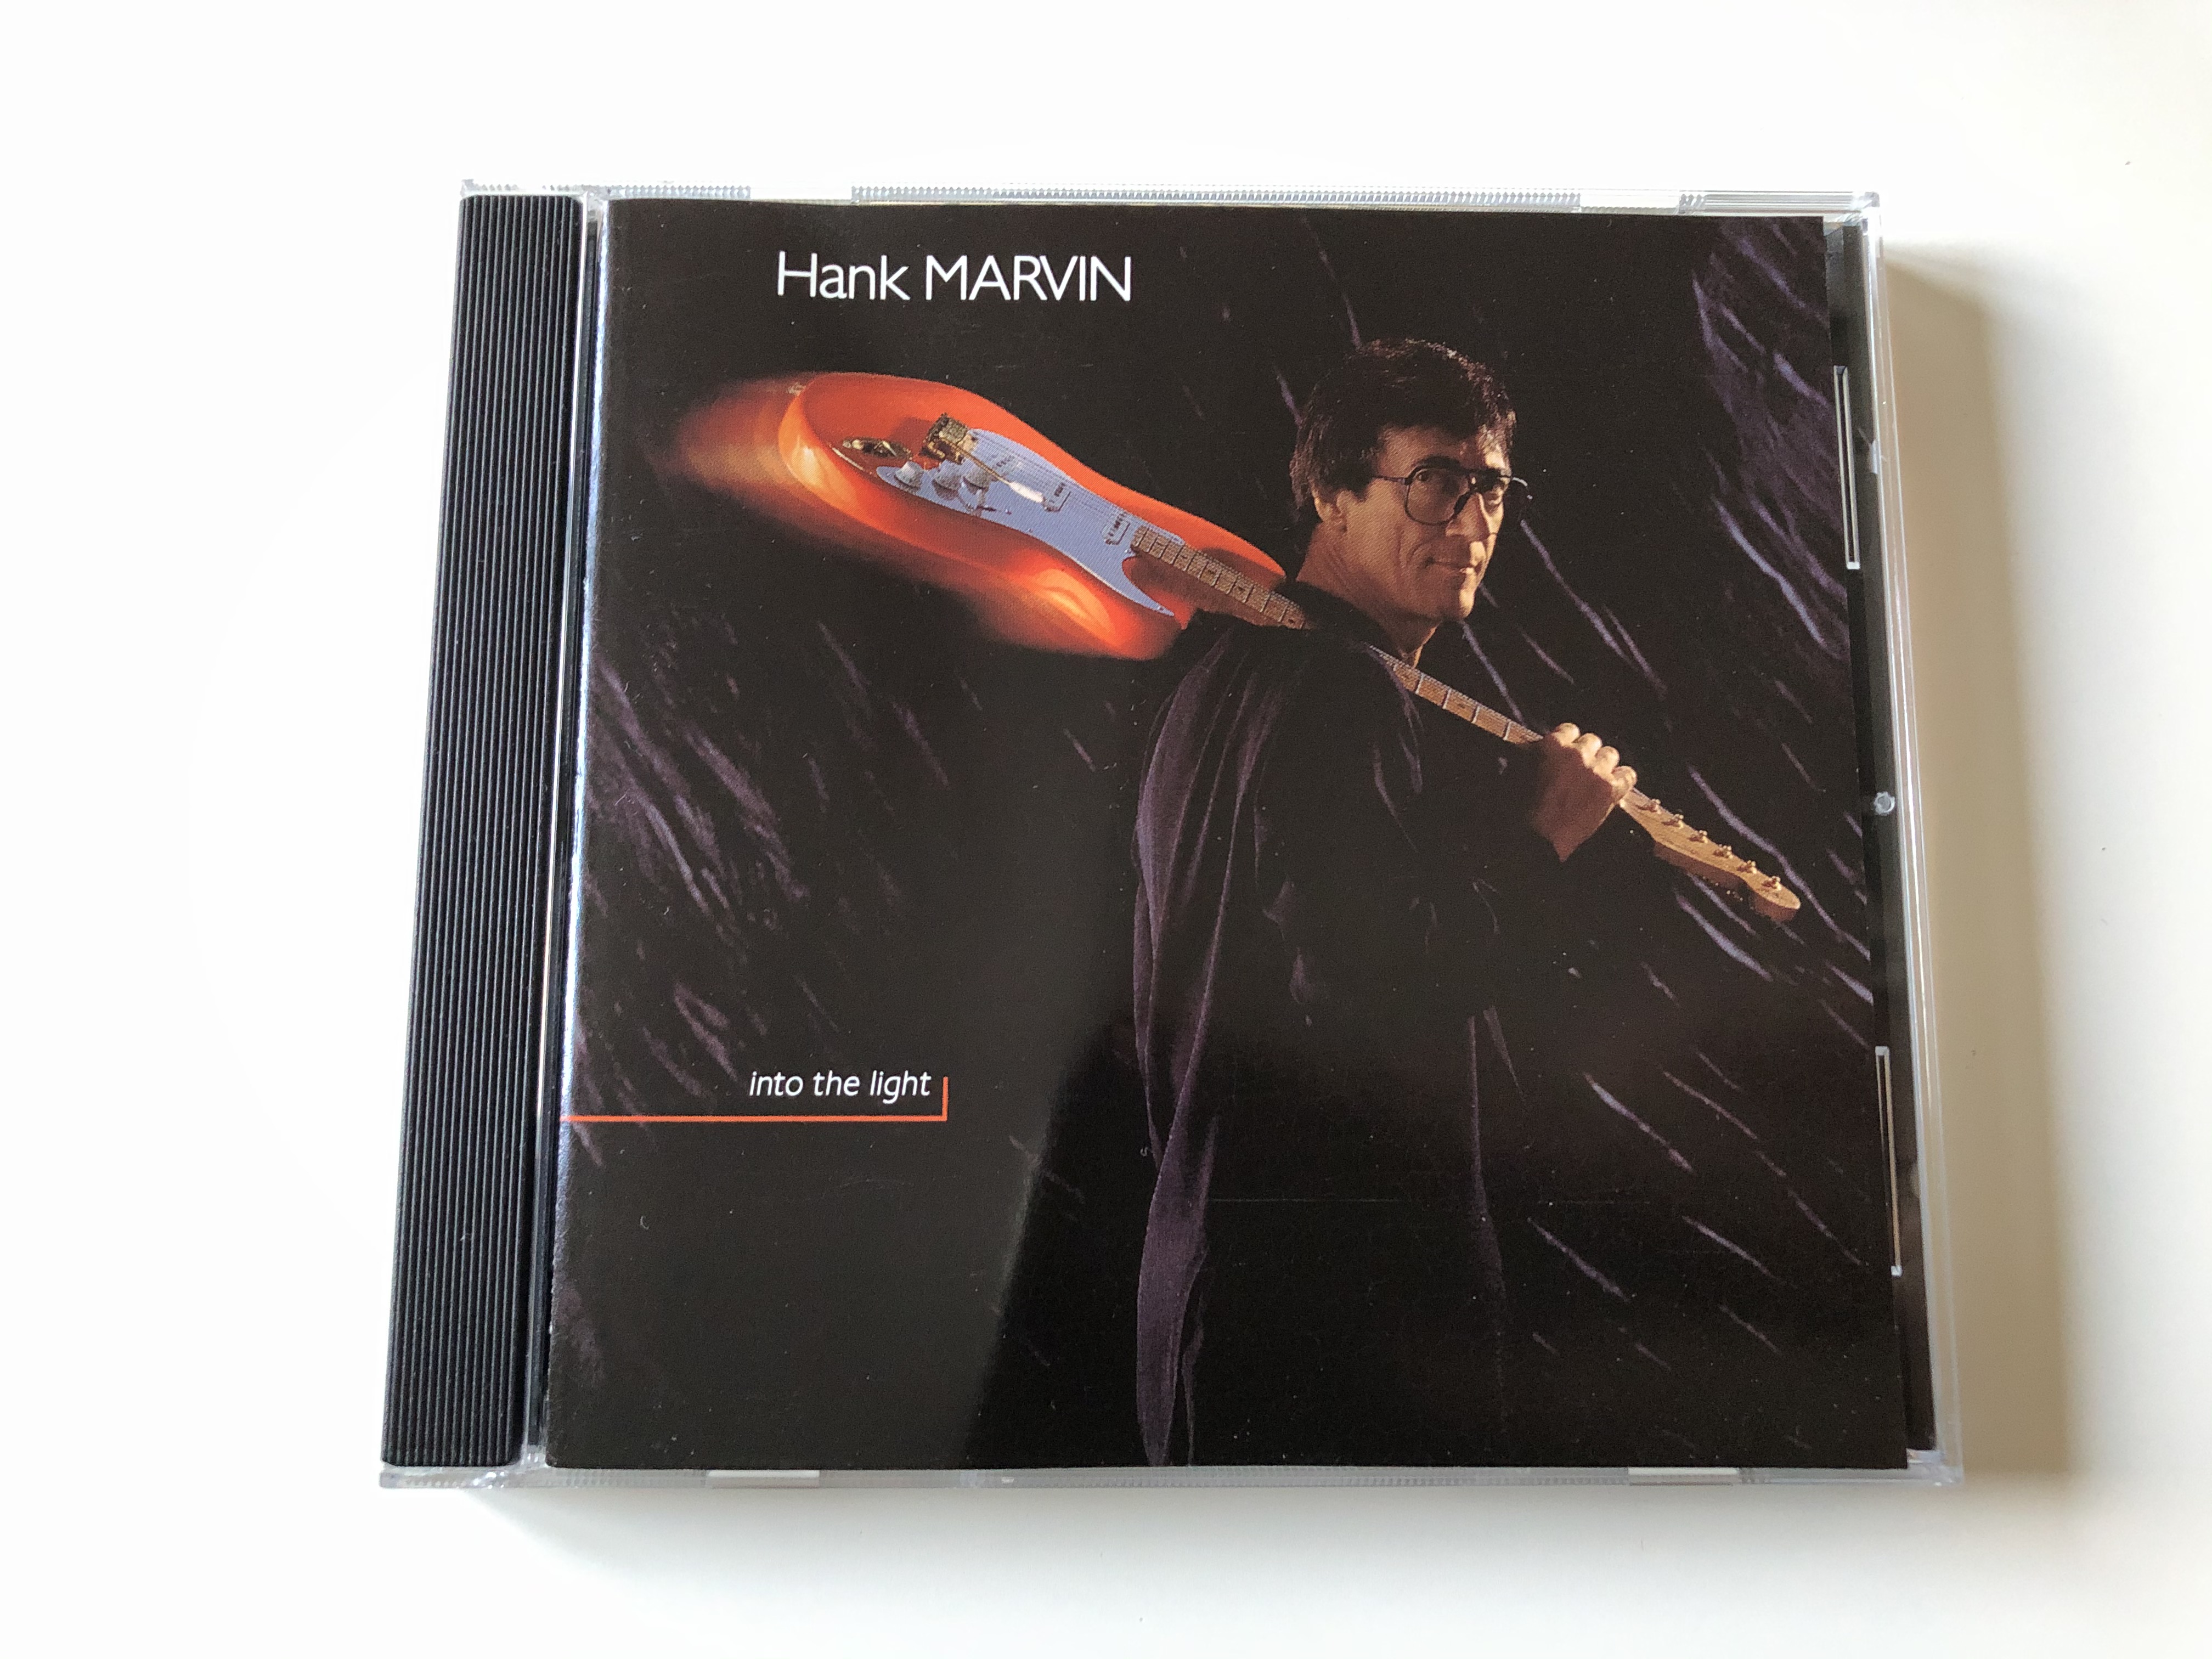 hank-marvin-into-the-light-polygram-tv-audio-cd-1992-517-148-2-1-.jpg